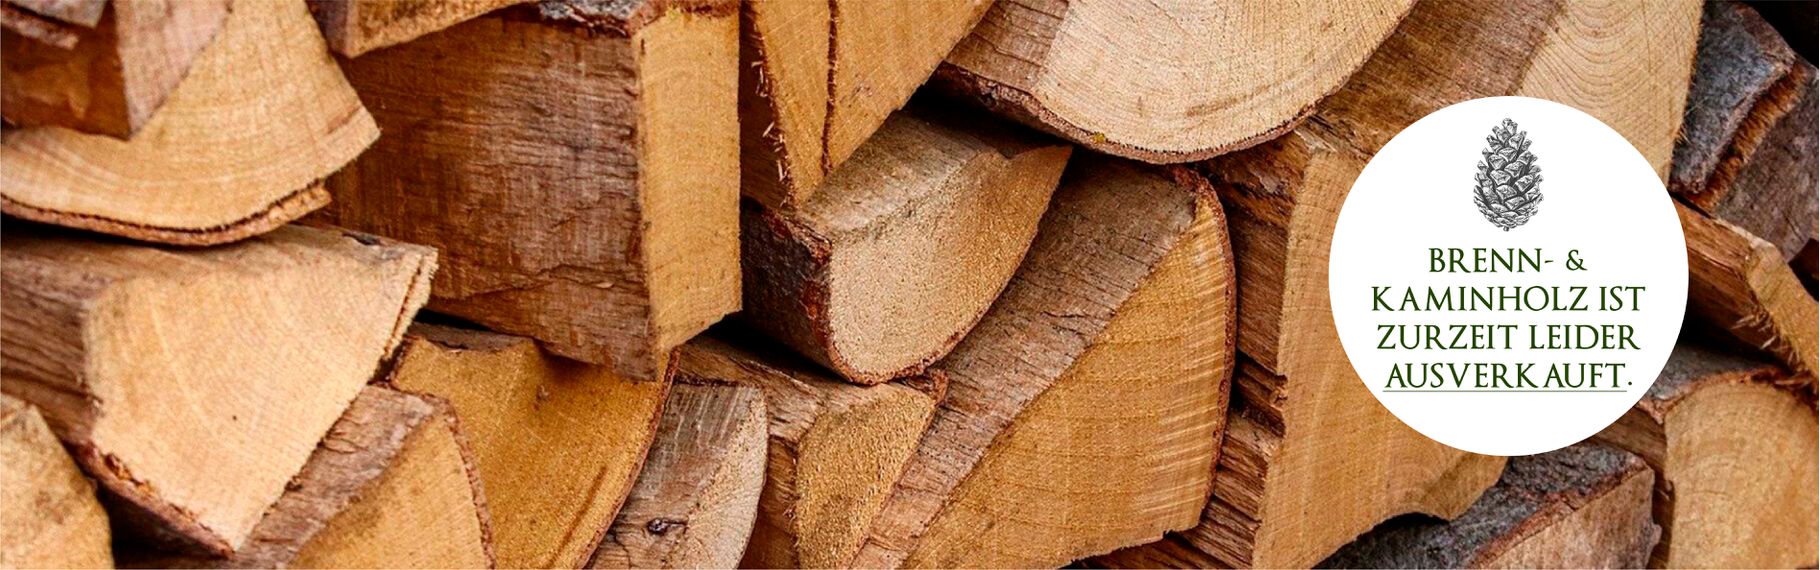 Brennholz Holz | Brennholz